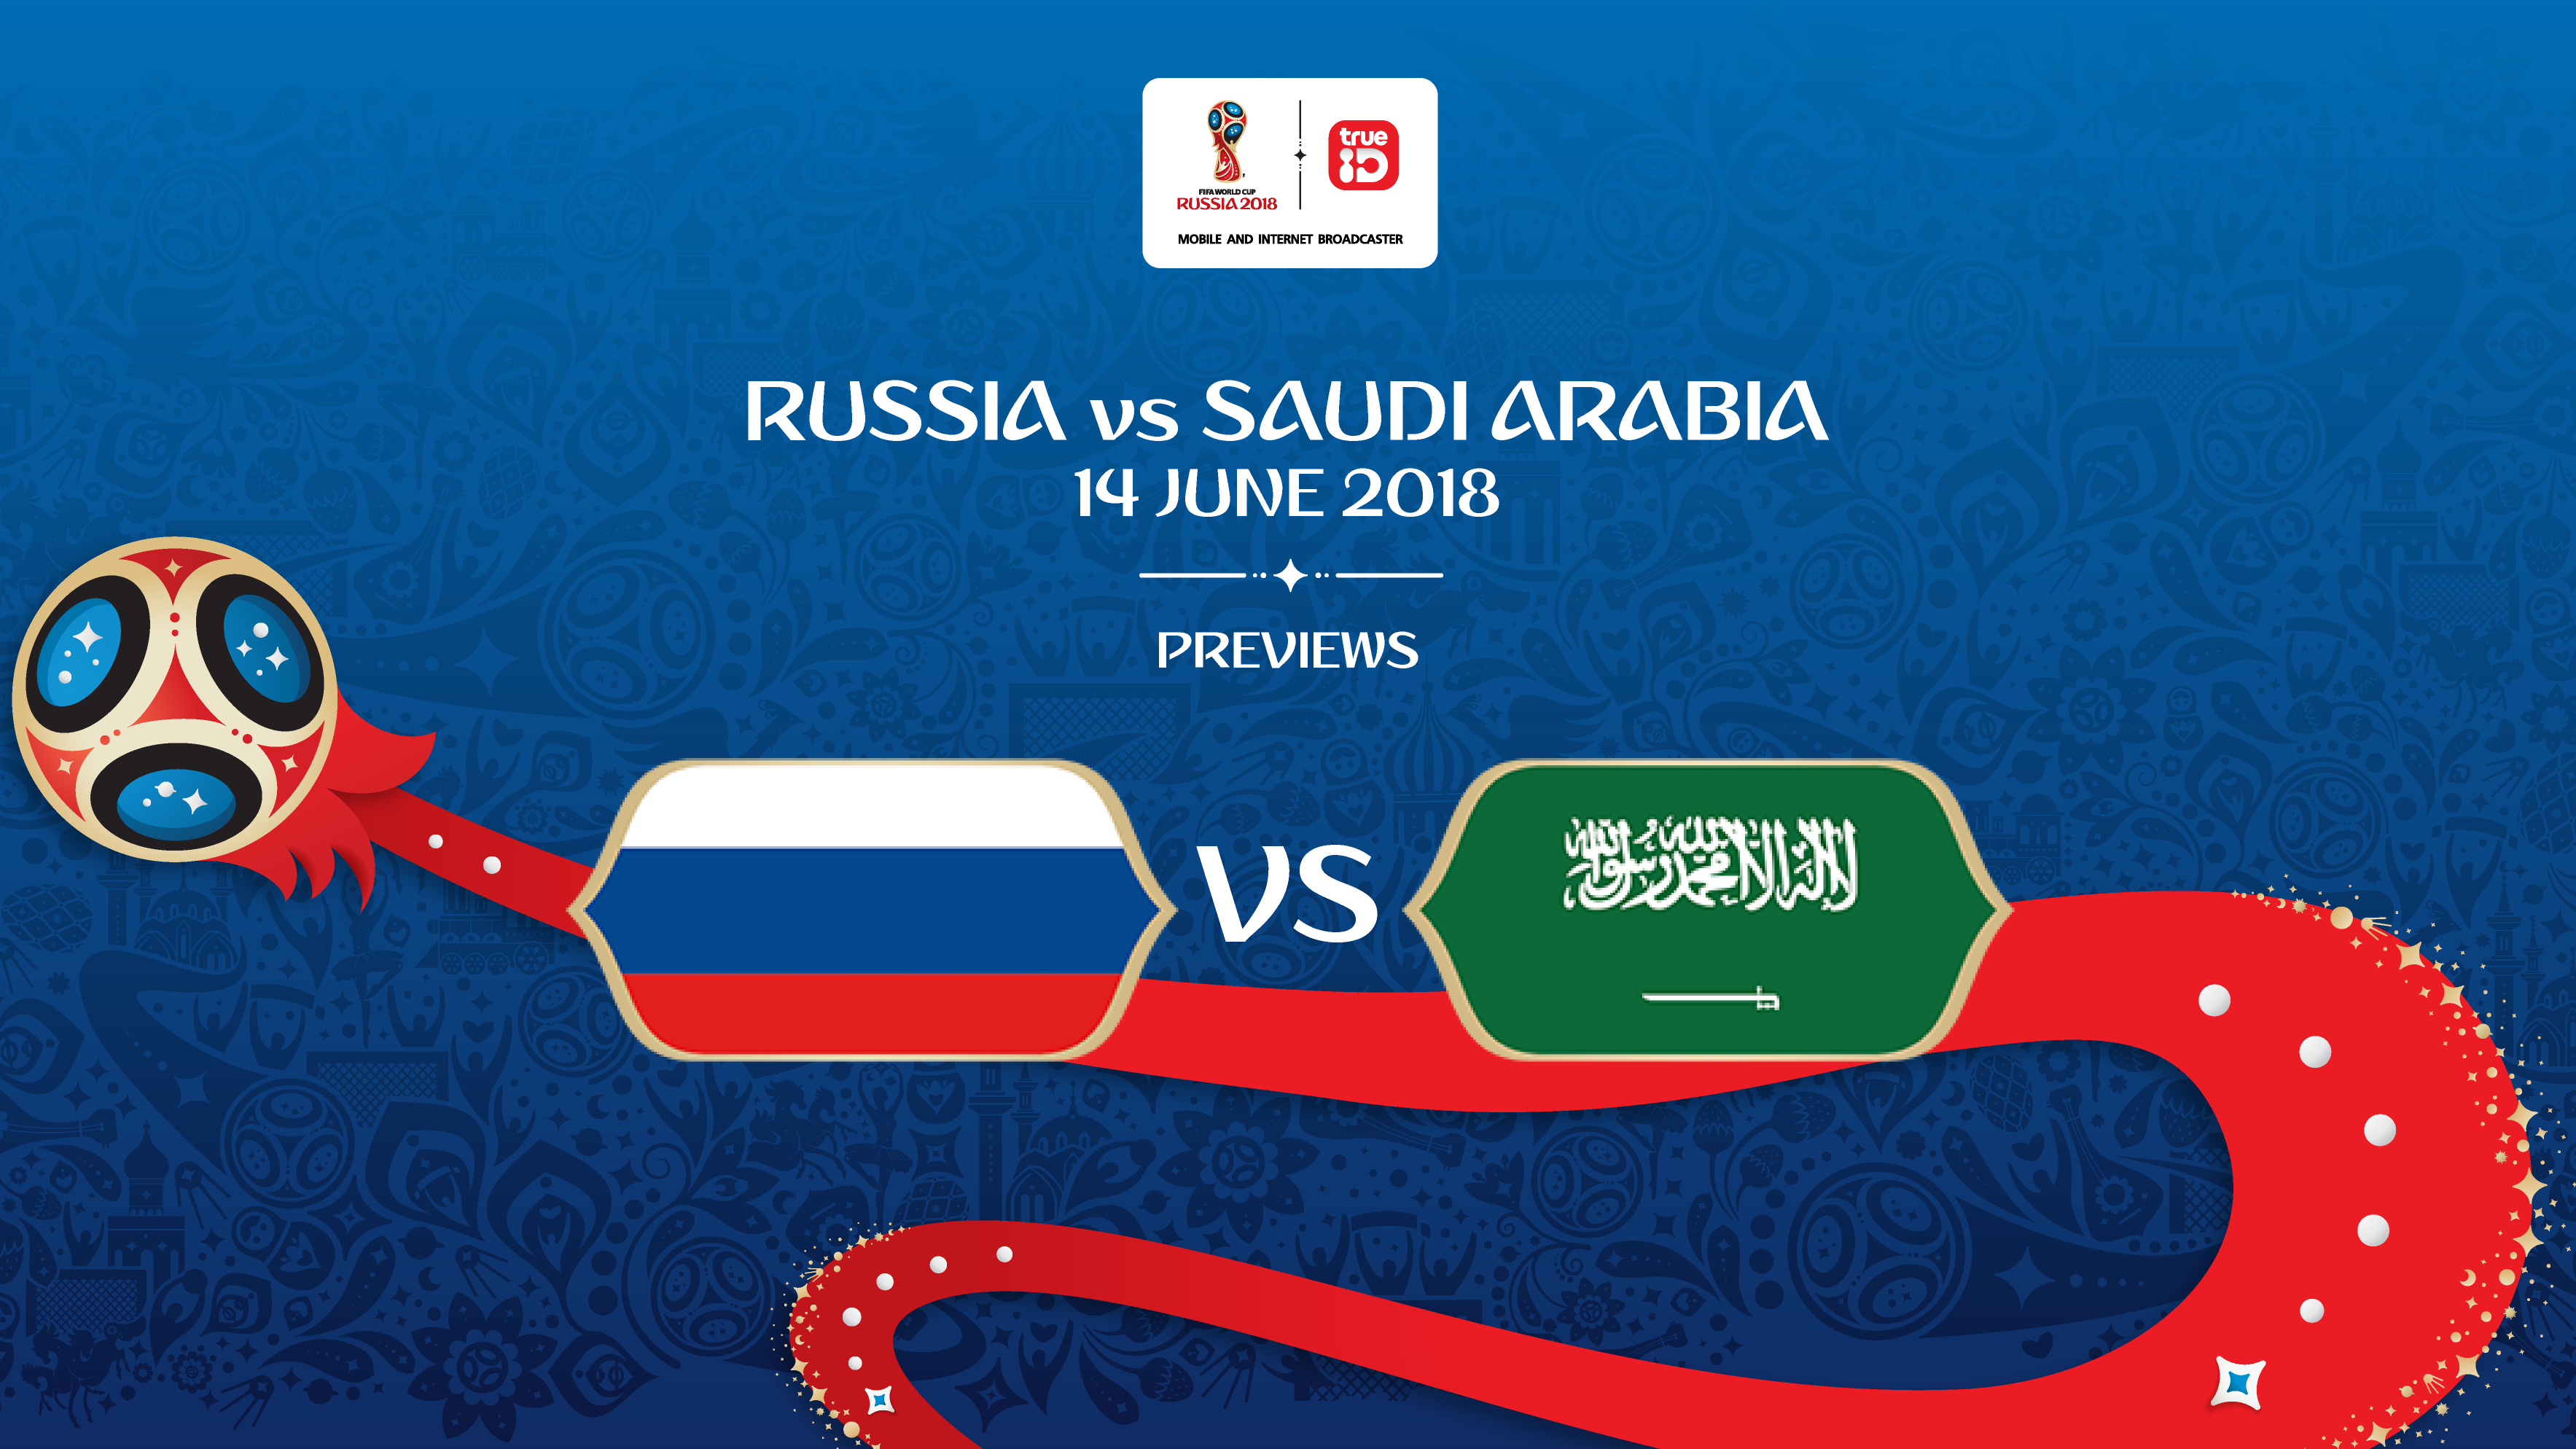 BREAKING : รายชื่อ 11 นักเตะ รัสเซีย vs ซาอุดิอาระเบีย นัดเปิดสนาม ฟุตบอลโลก 2018